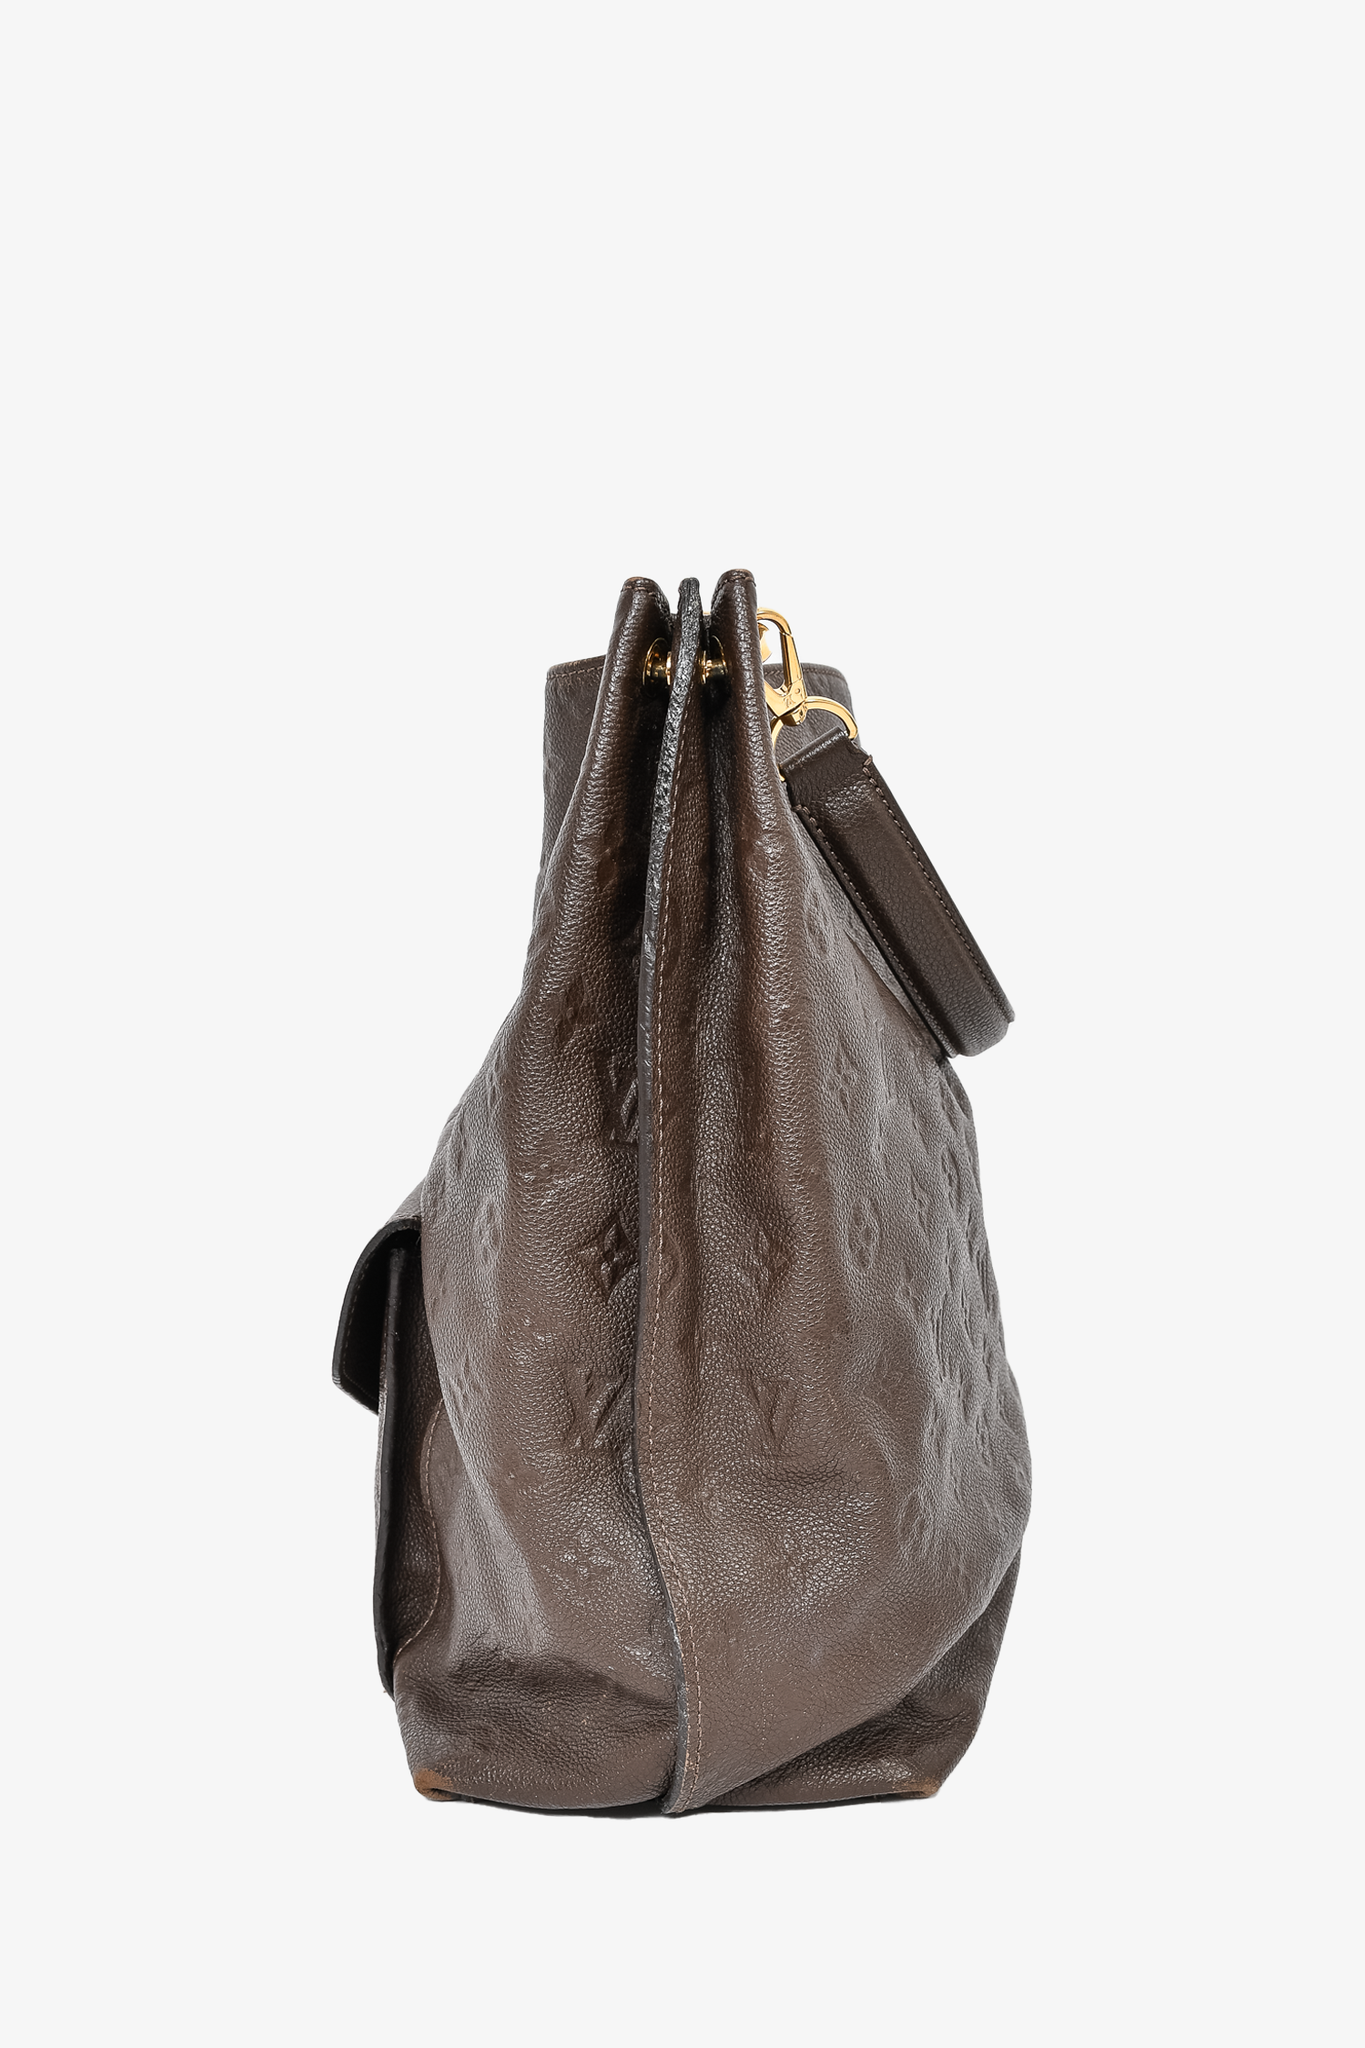 Louis Vuitton Metis Hobo Empreinte Bag